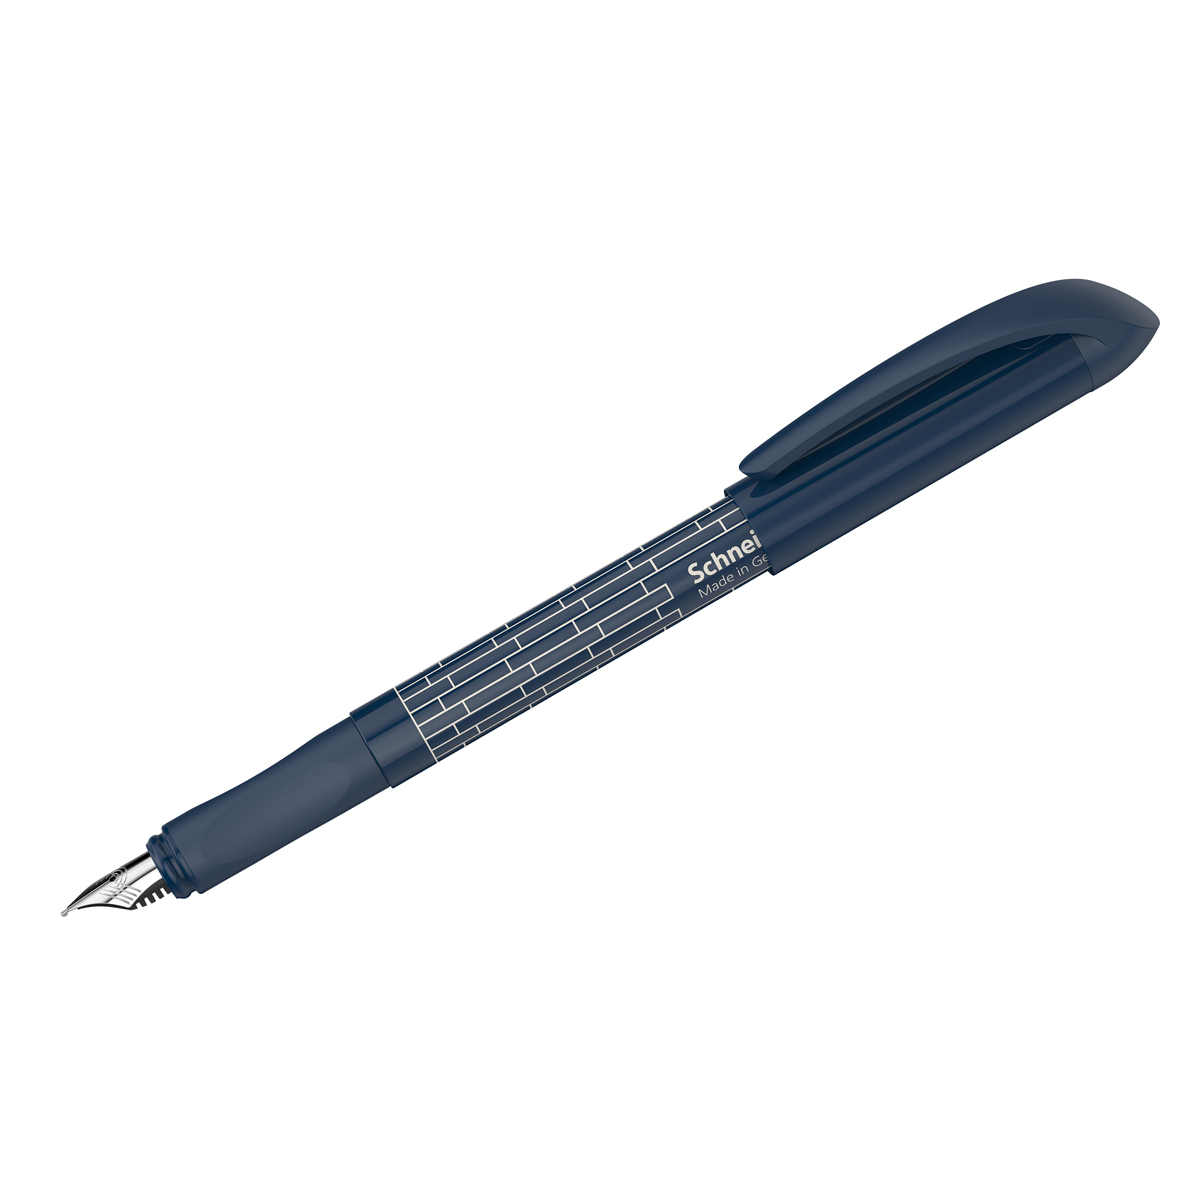 Ручка перьевая Schneider Easy navy синяя, 1 картридж, грип, темно-синий корпус